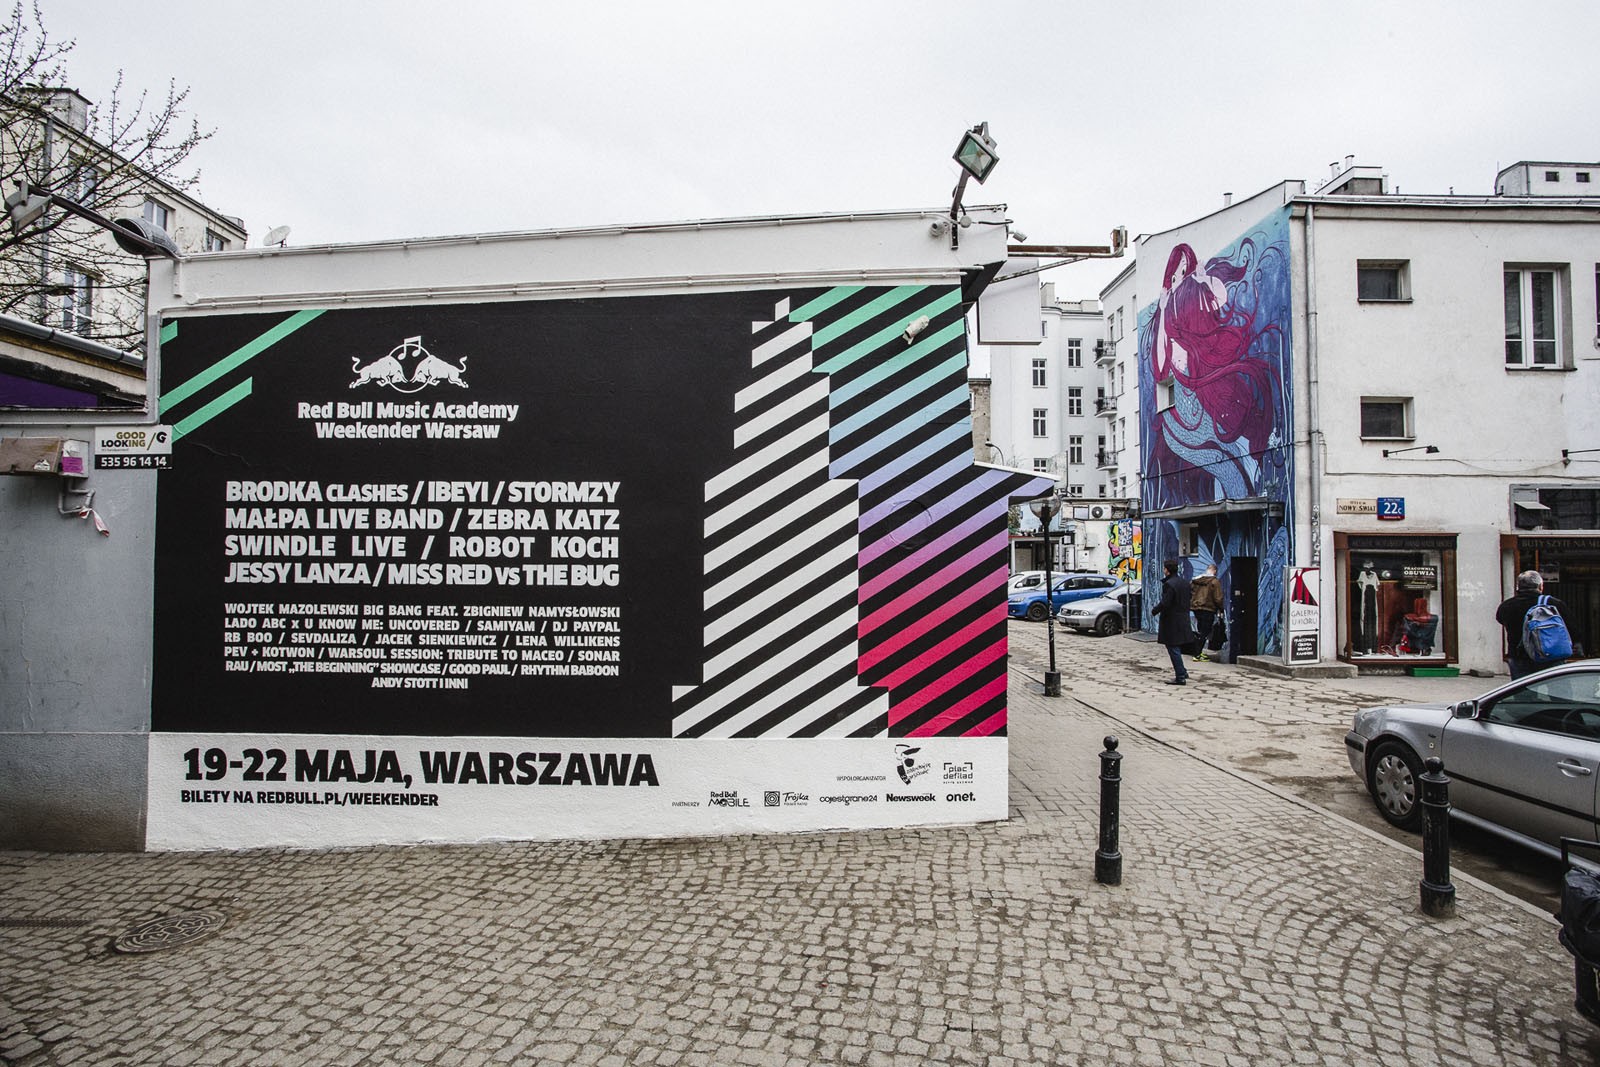 Pawilon w centrum Warszawy z namalowanym muralem przedstawiającym pałac kultury i line-up festiwalu Red Bull Music Academy Weekender Warsaw 2016 | Zlecenie dla RedBull Weekender 2016 | Portfolio